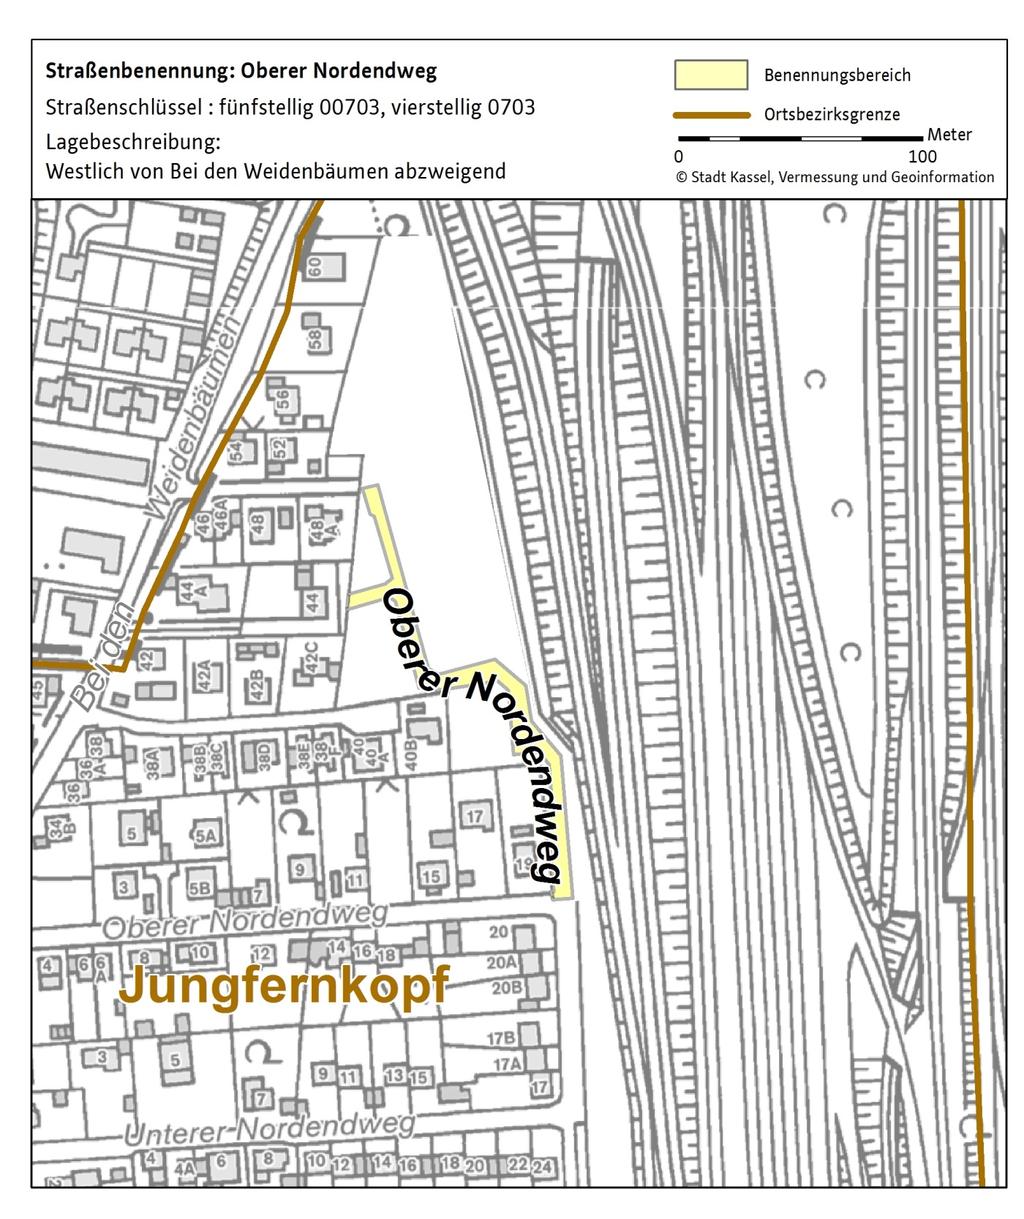 Straßenbenennungen in der Stadt Kassel Der Ortsbeirat Jungfernkopf hat in seiner Sitzung vom 9. November 2017 die Verlängerung der Straßenbenennung Oberer Nordendweg beschlossen.